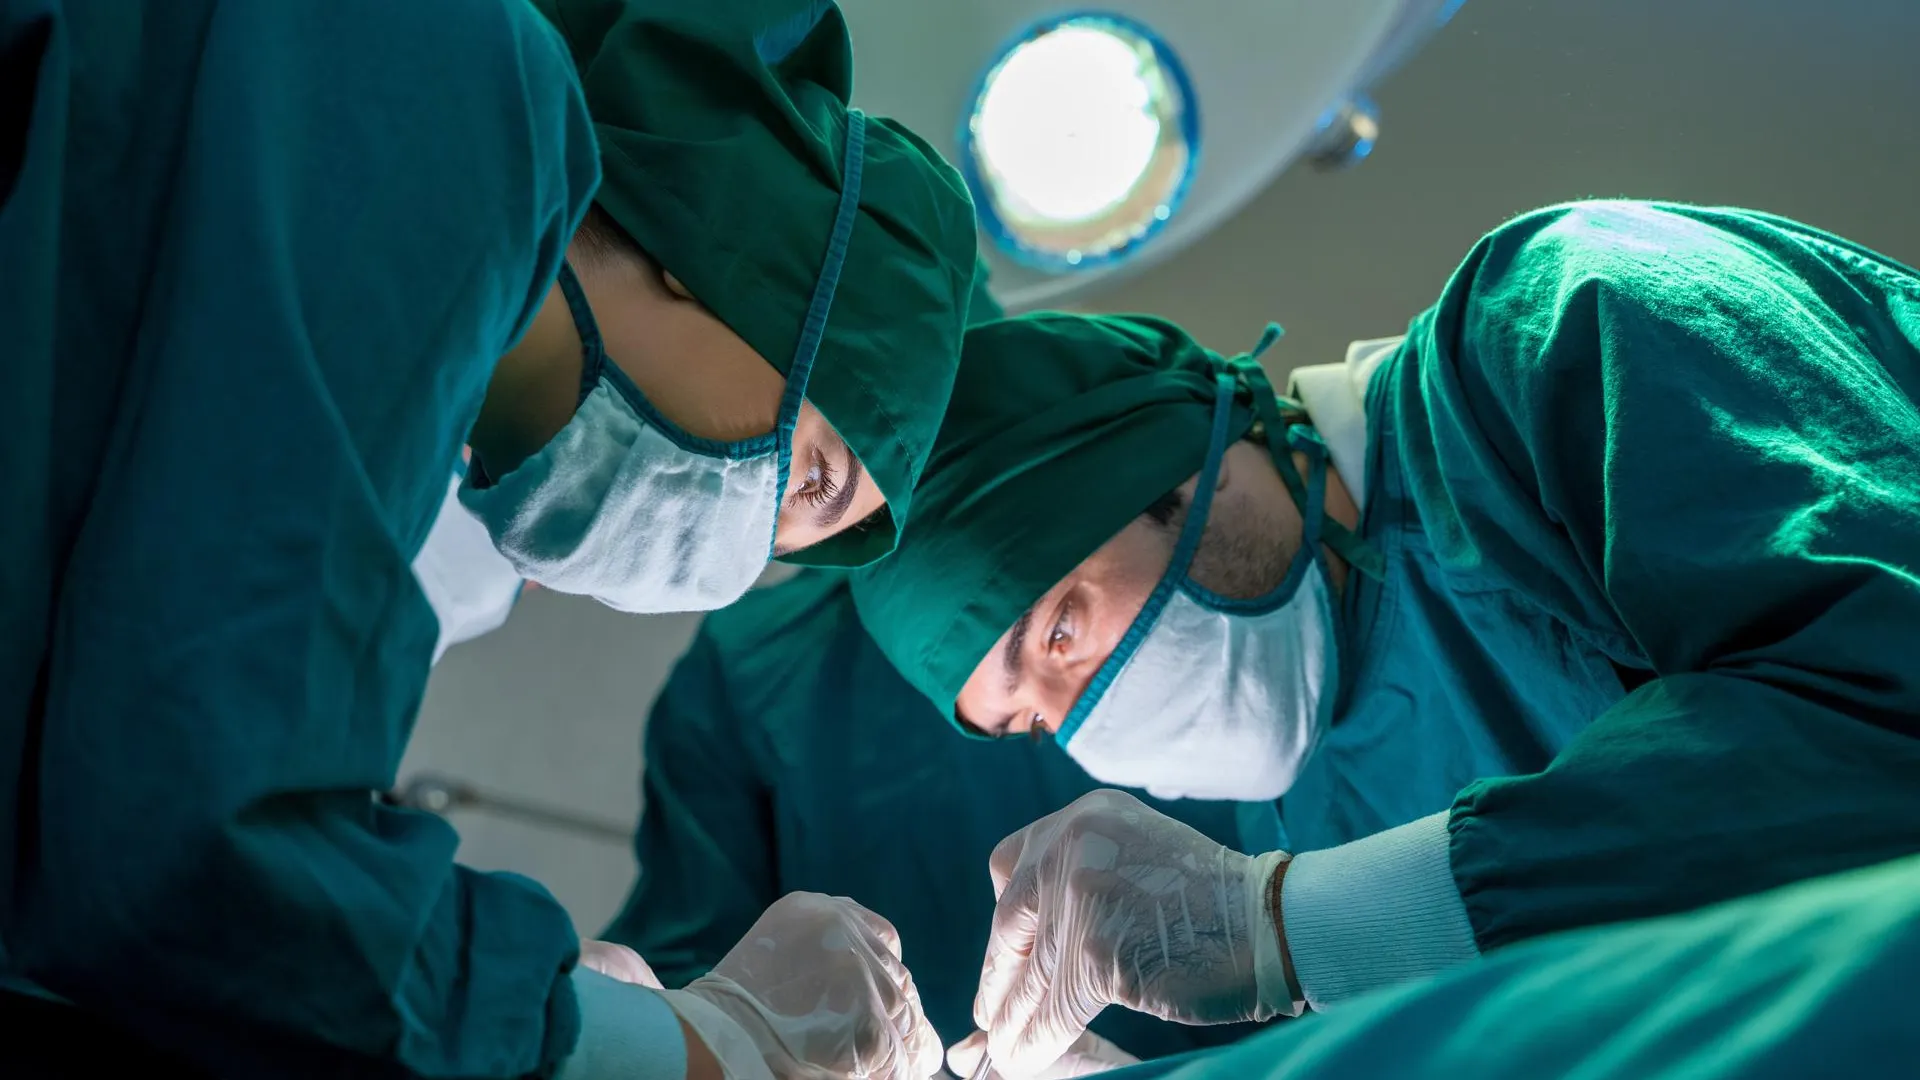 Костромские врачи впервые провели операцию на открытом сердце